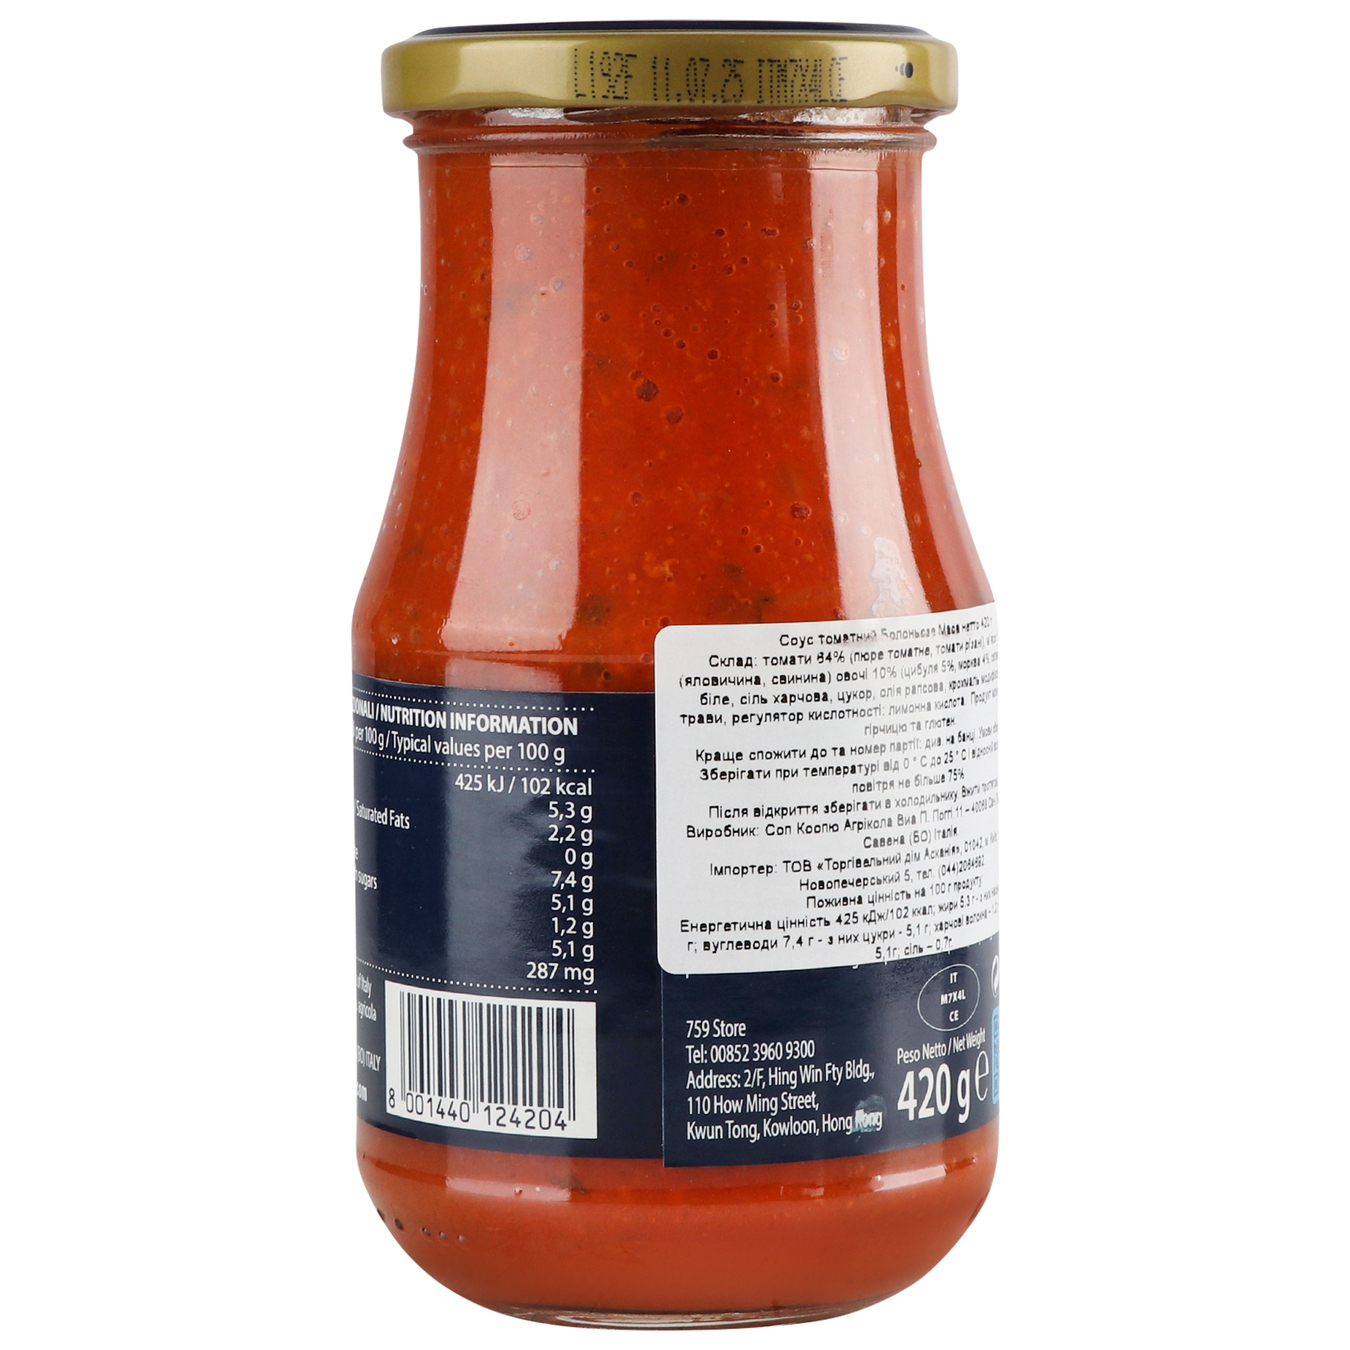 Cirio Bolognese tomato sauce 420g 2